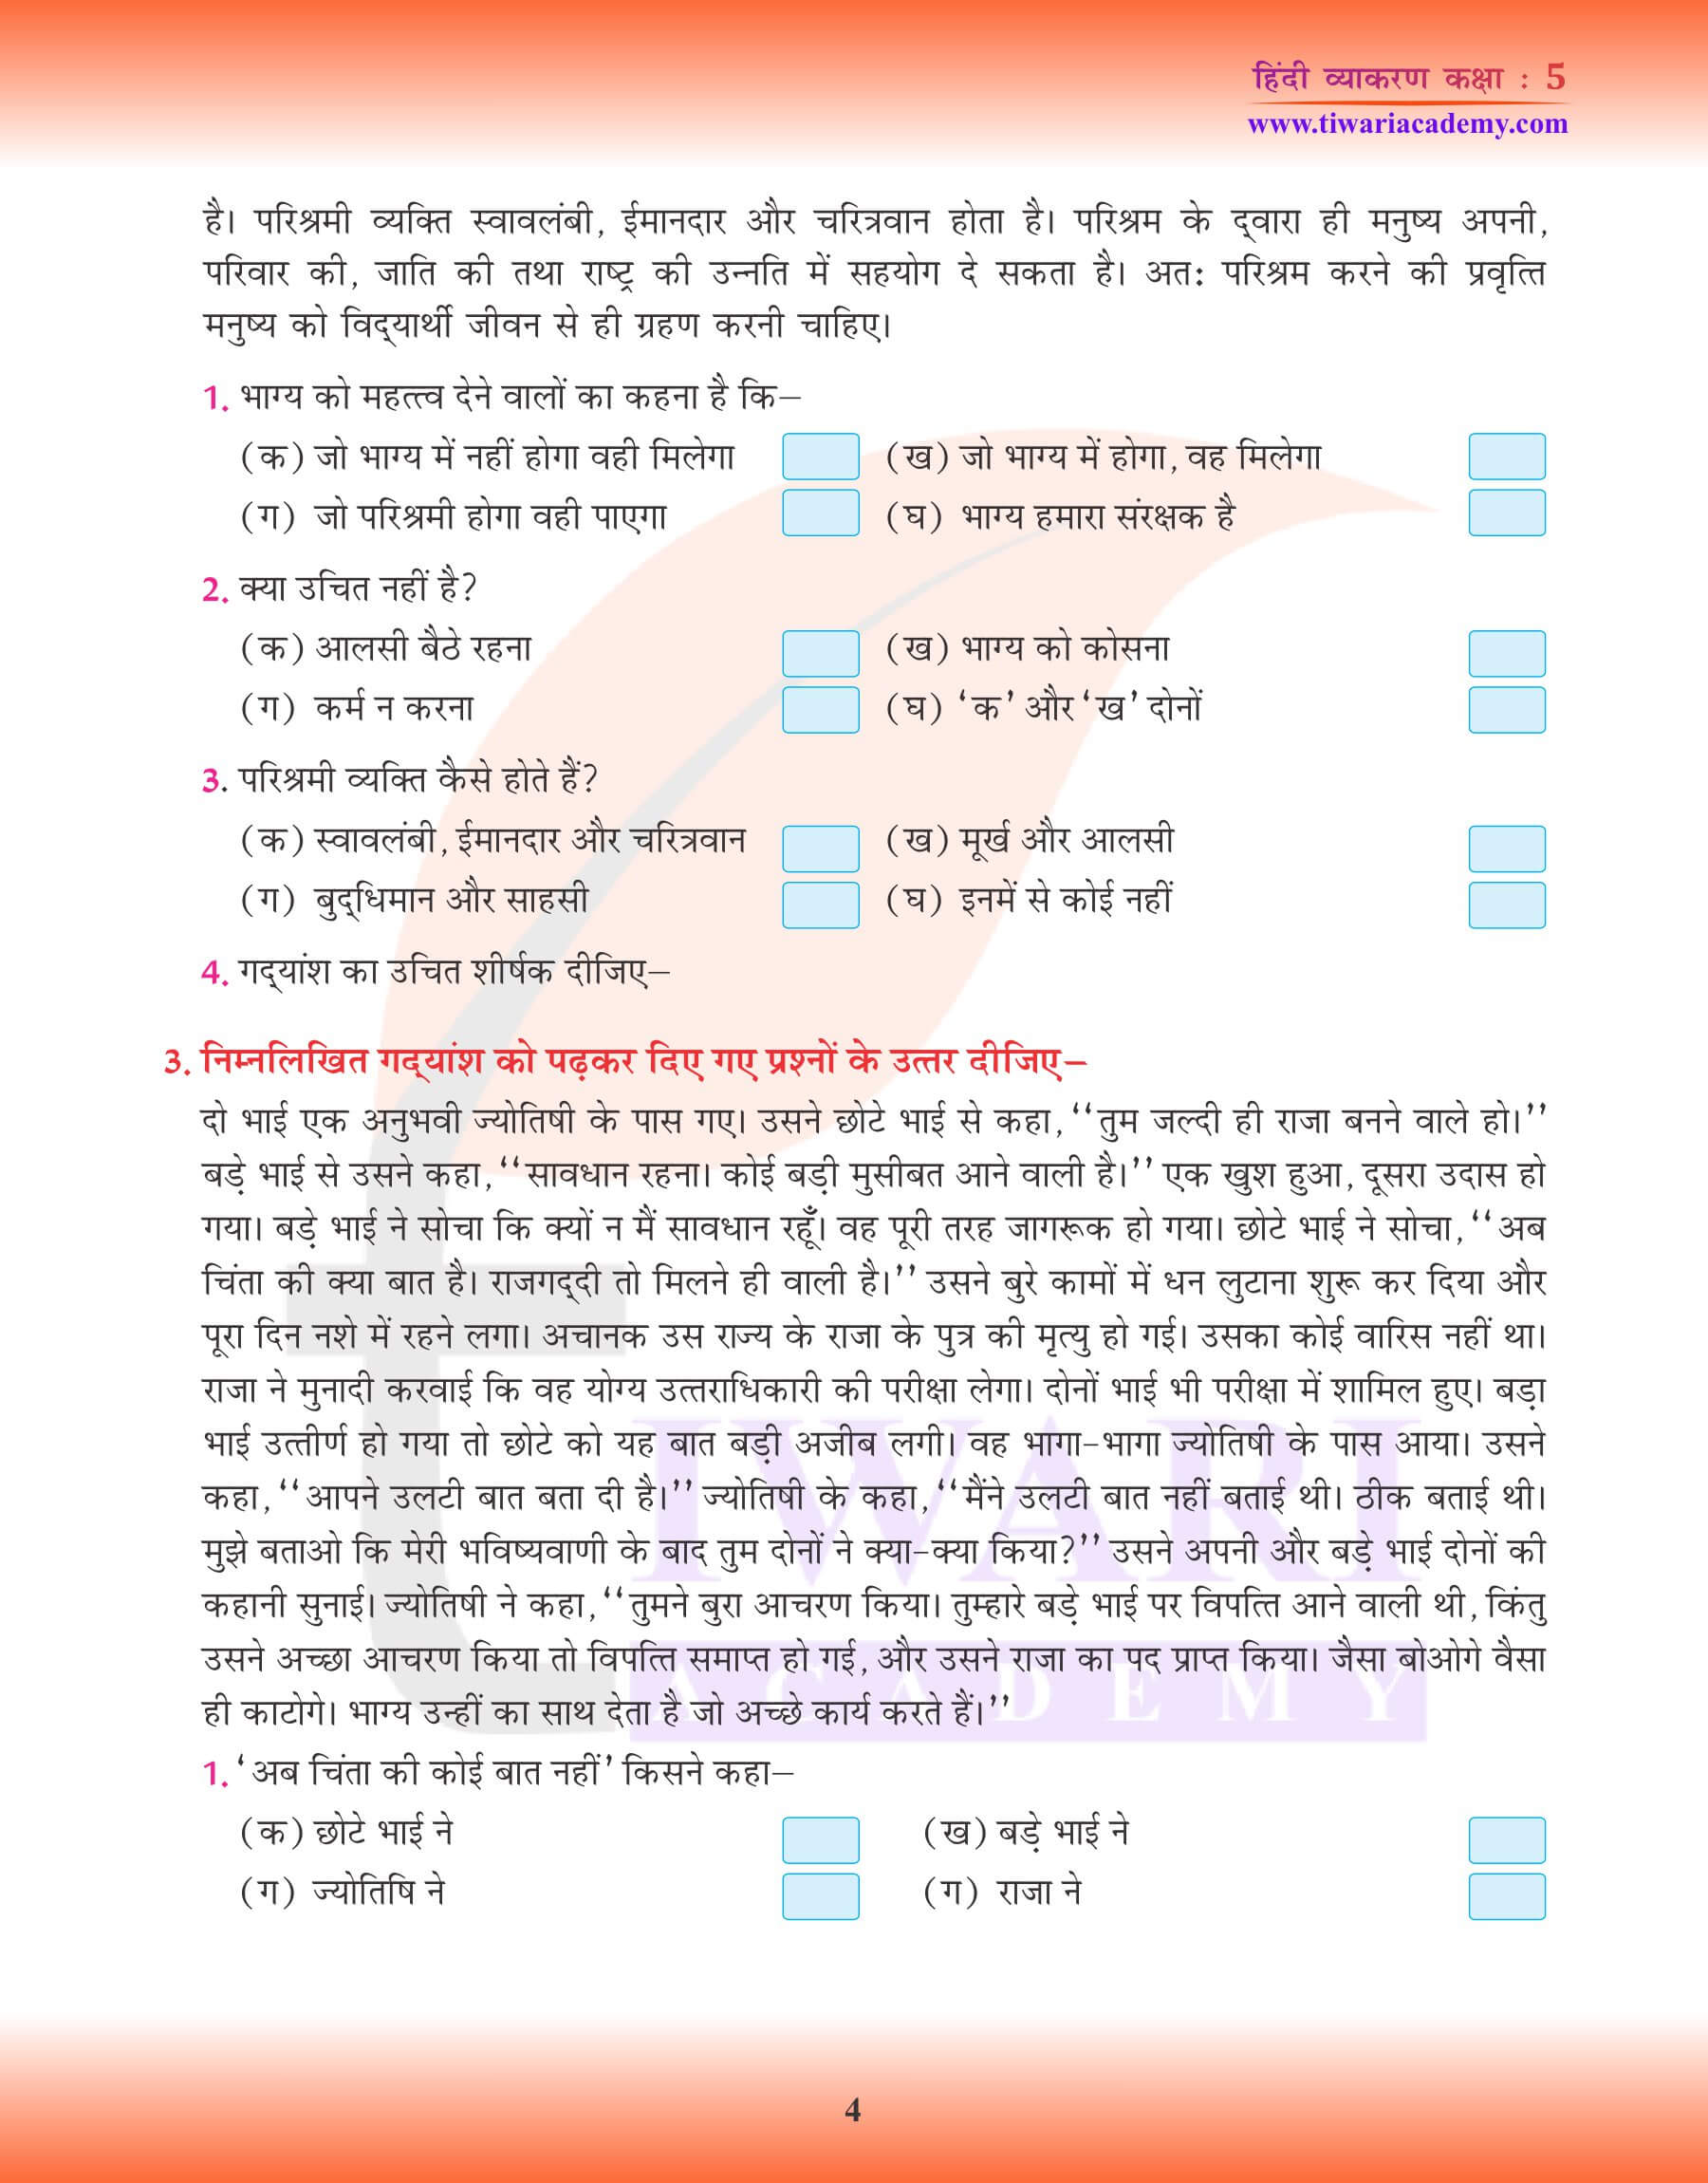 कक्षा 5 हिंदी व्याकरण में अपठित गद्यांश